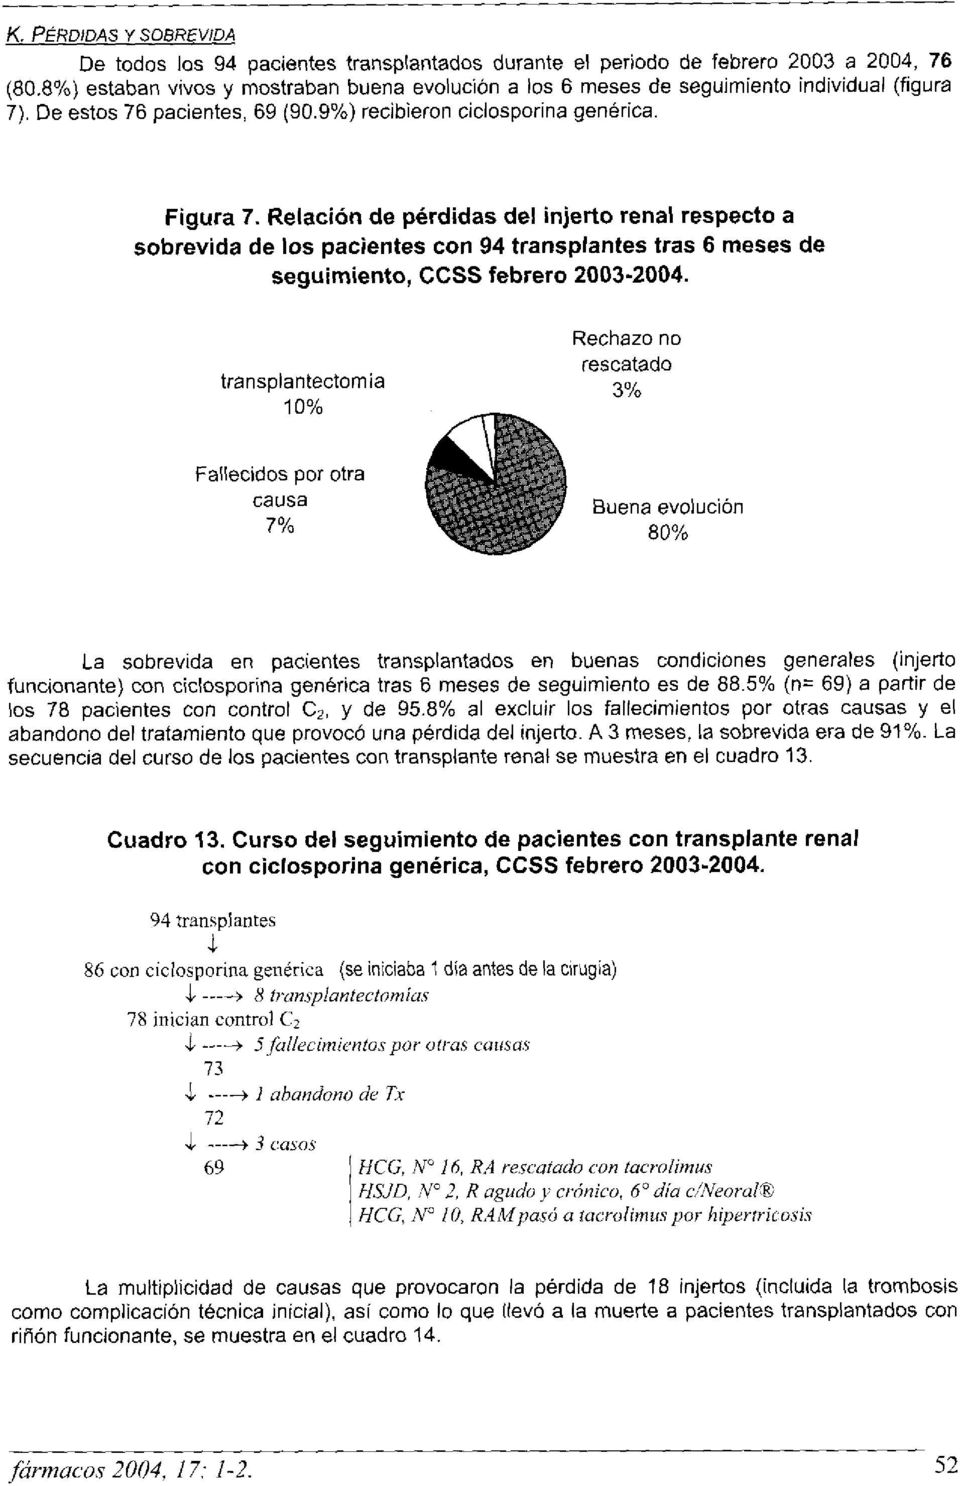 Relación de pérdidas del injerto renal respecto a sobrevida de los pacientes con 94 transplantes tras 6 meses de seguimiento, CCSS febrero 2003-2004.